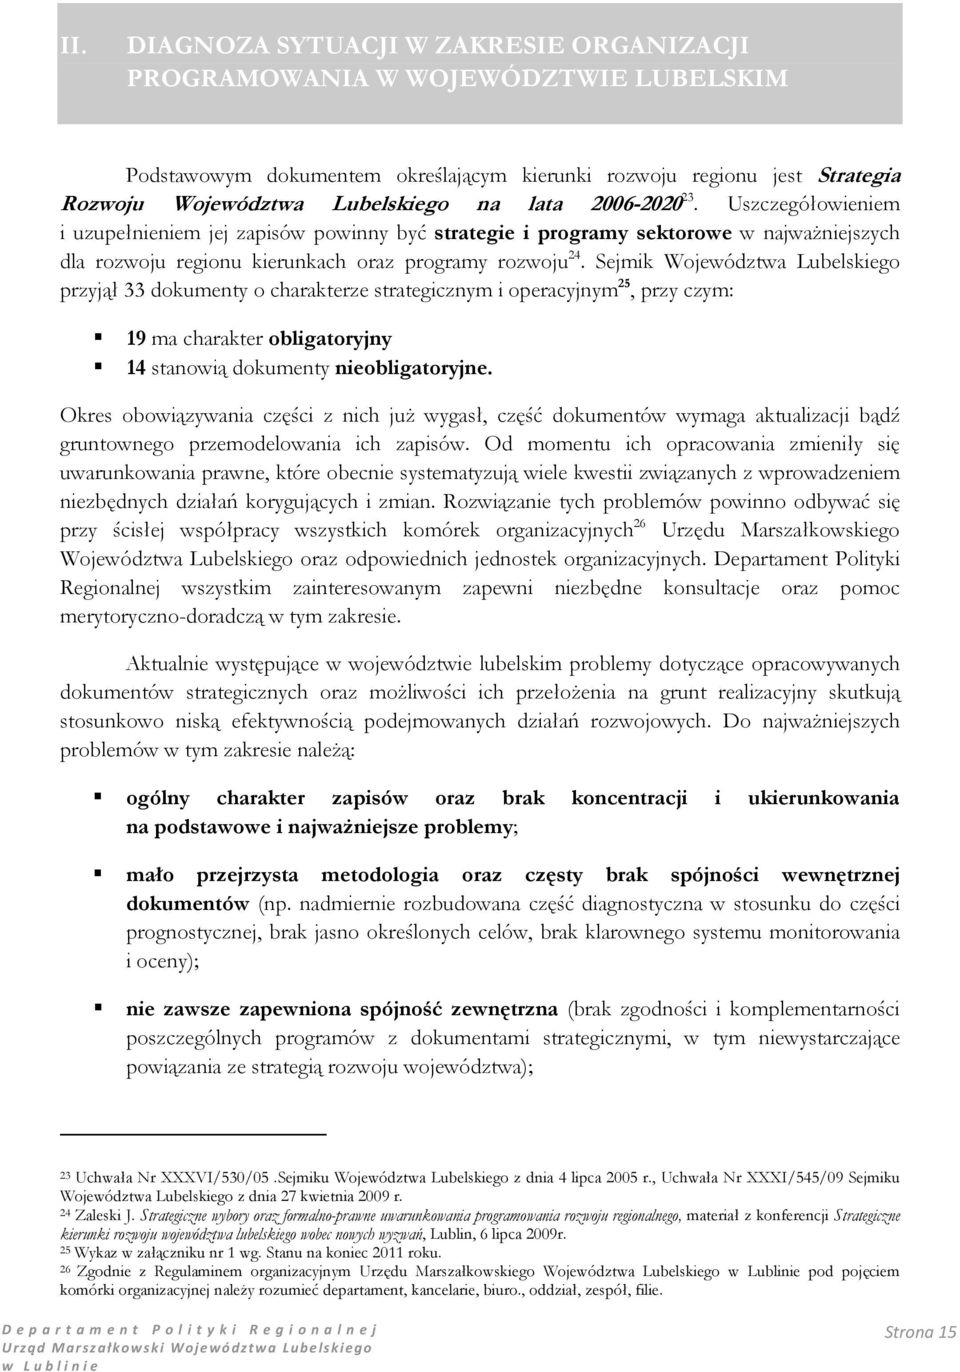 Sejmik Województwa Lubelskiego przyjął 33 dokumenty o charakterze strategicznym i operacyjnym 25, przy czym: 19 ma charakter obligatoryjny 14 stanowią dokumenty nieobligatoryjne.